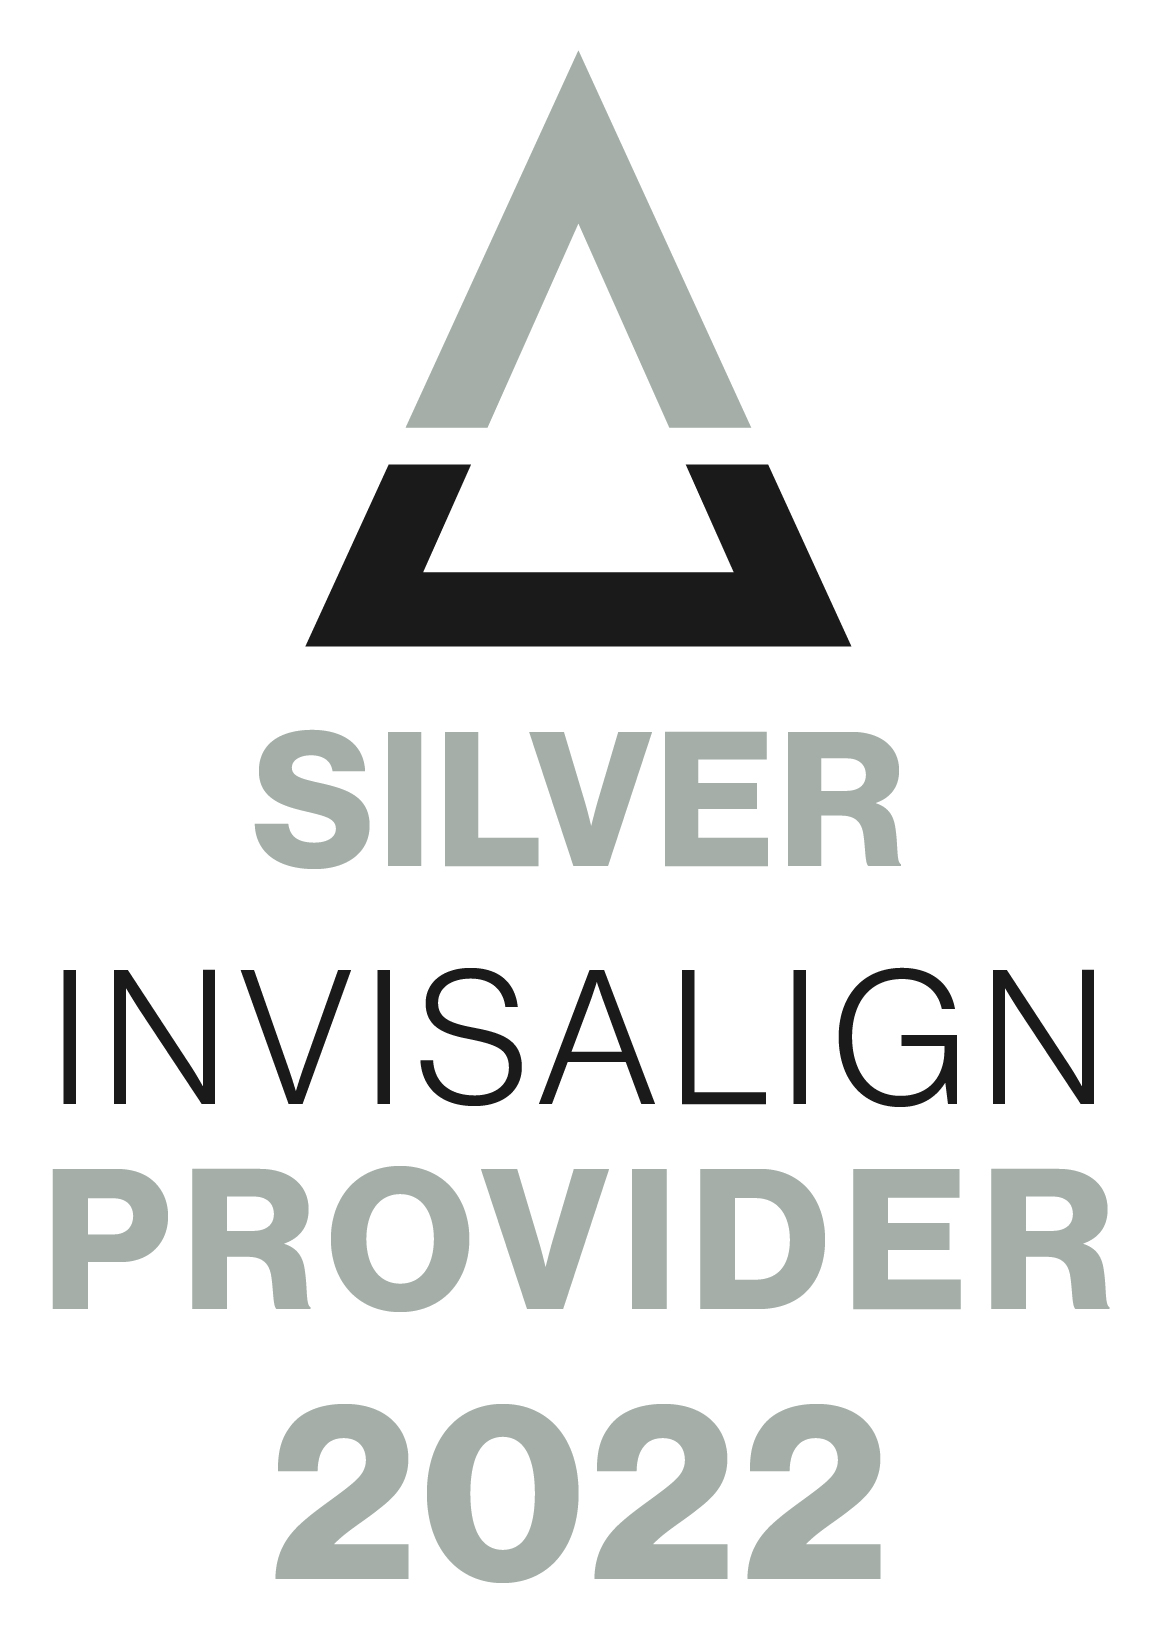 Silver Invisalign Provider 2022